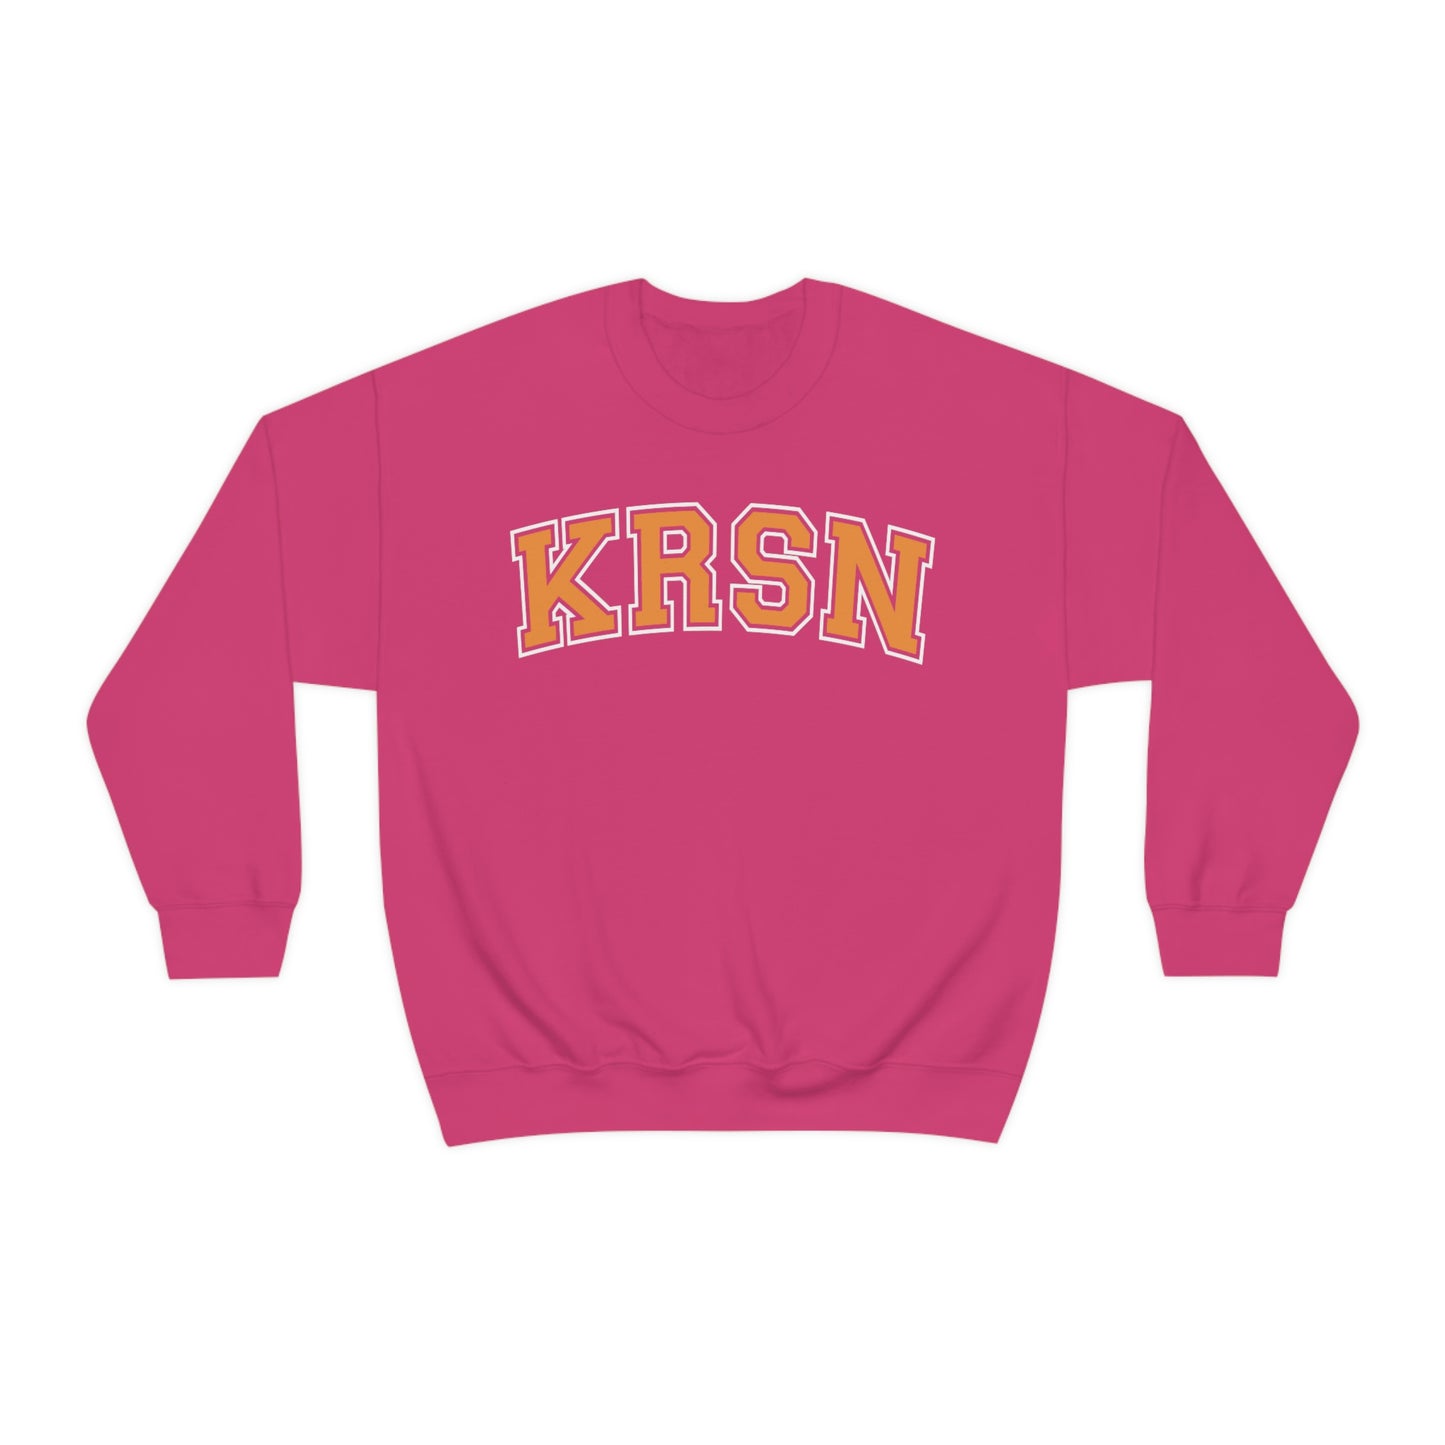 KRSN Crewneck Sweatshirt Volleyball College Nekomas KRSN High Volleyball Club FLY Karasuns sweater